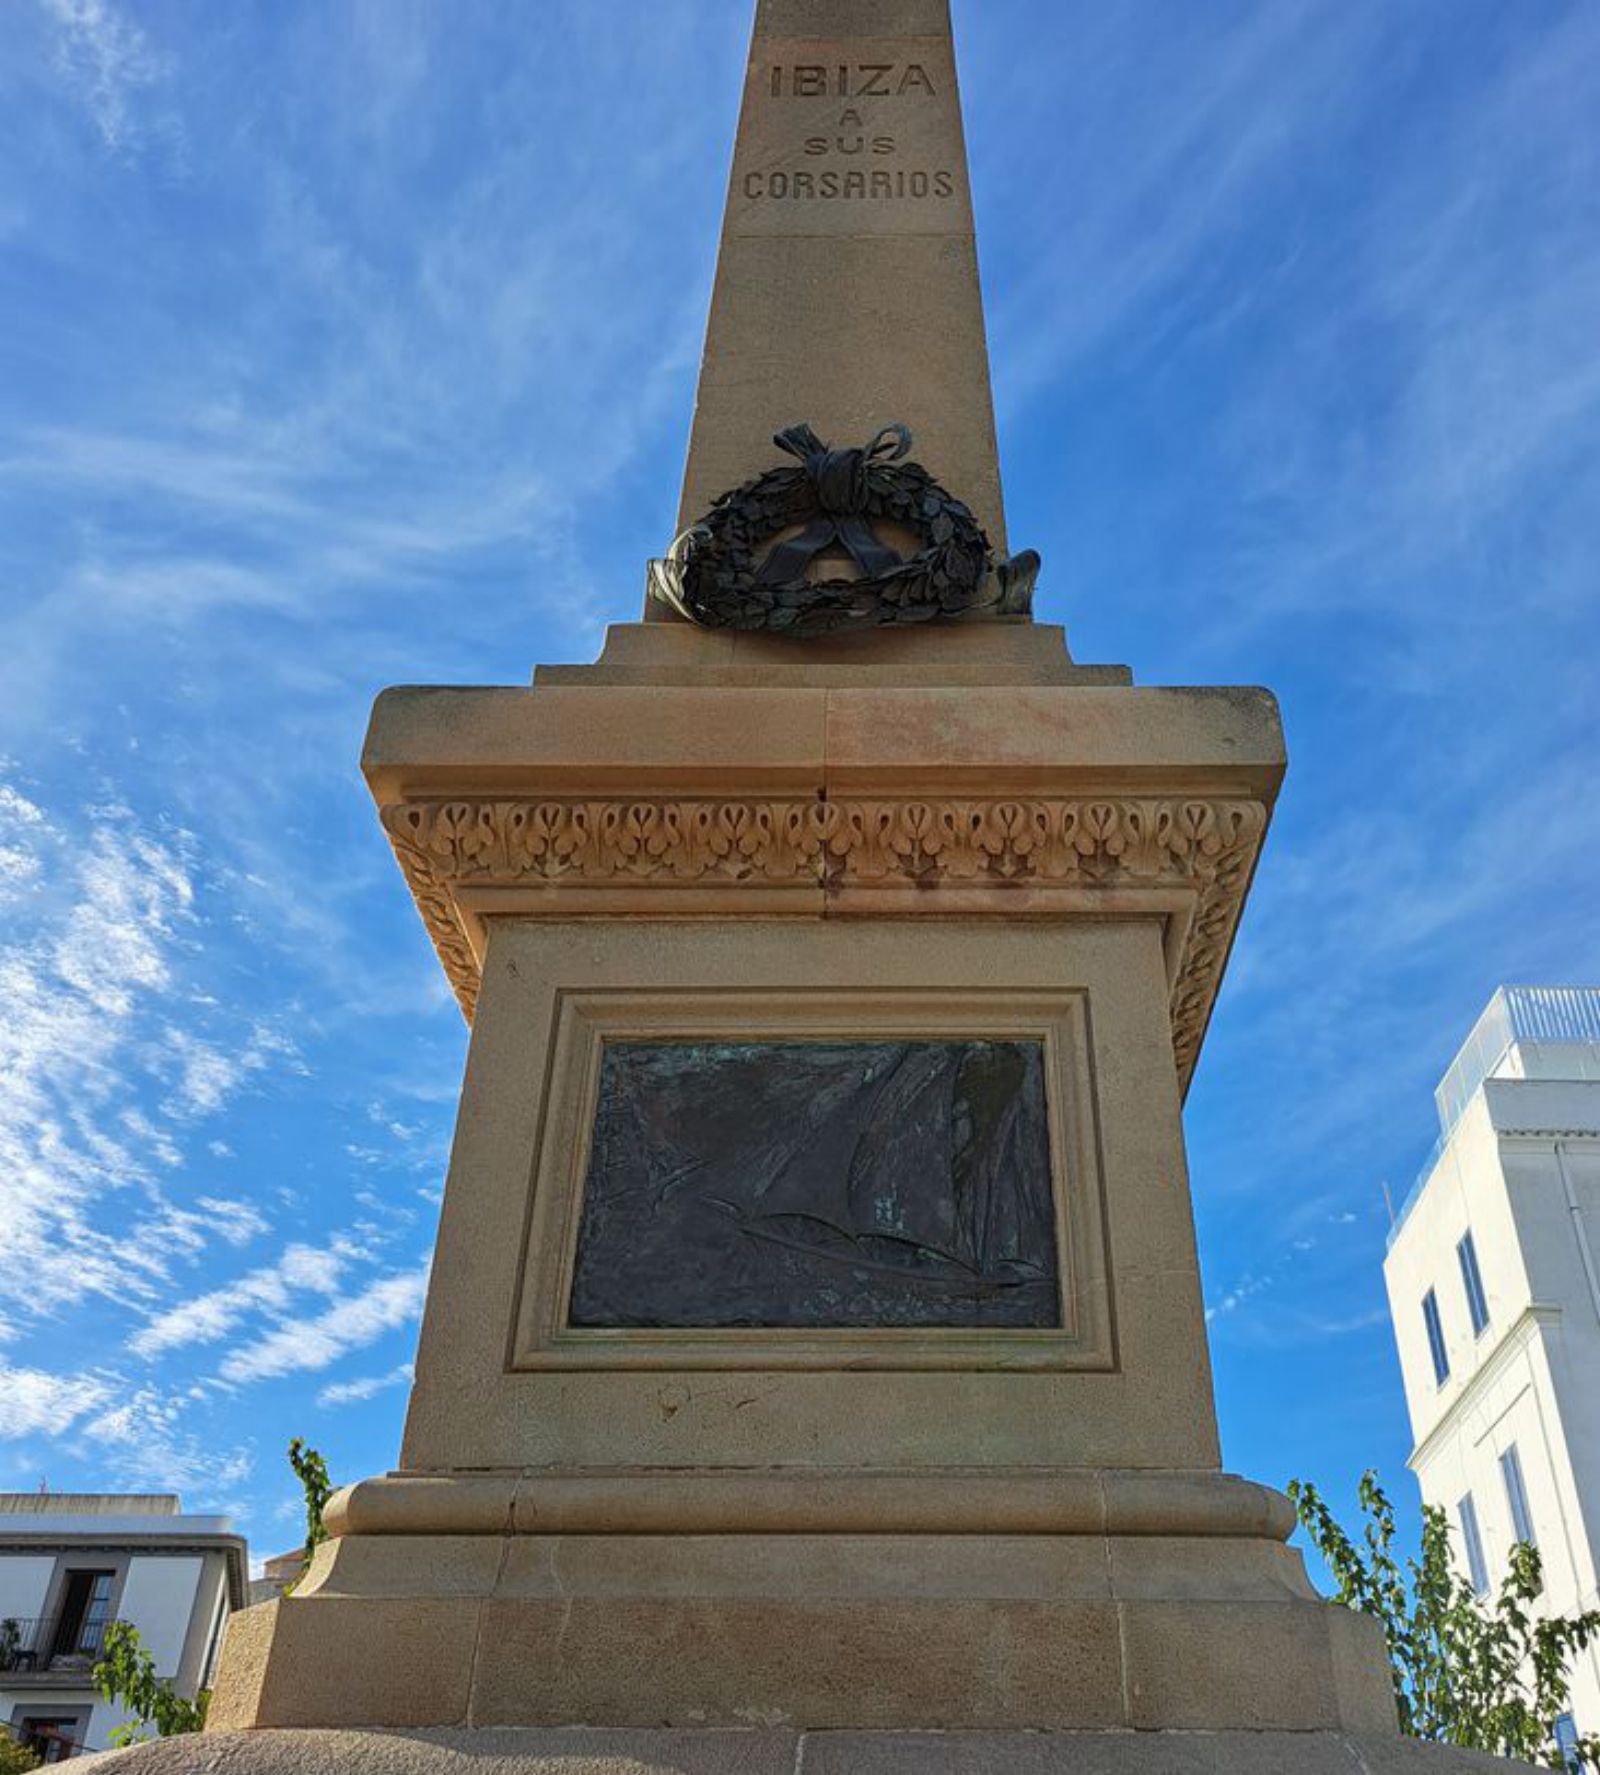 Monumento de Ibiza a sus corsarios, erigido por suscripción popular